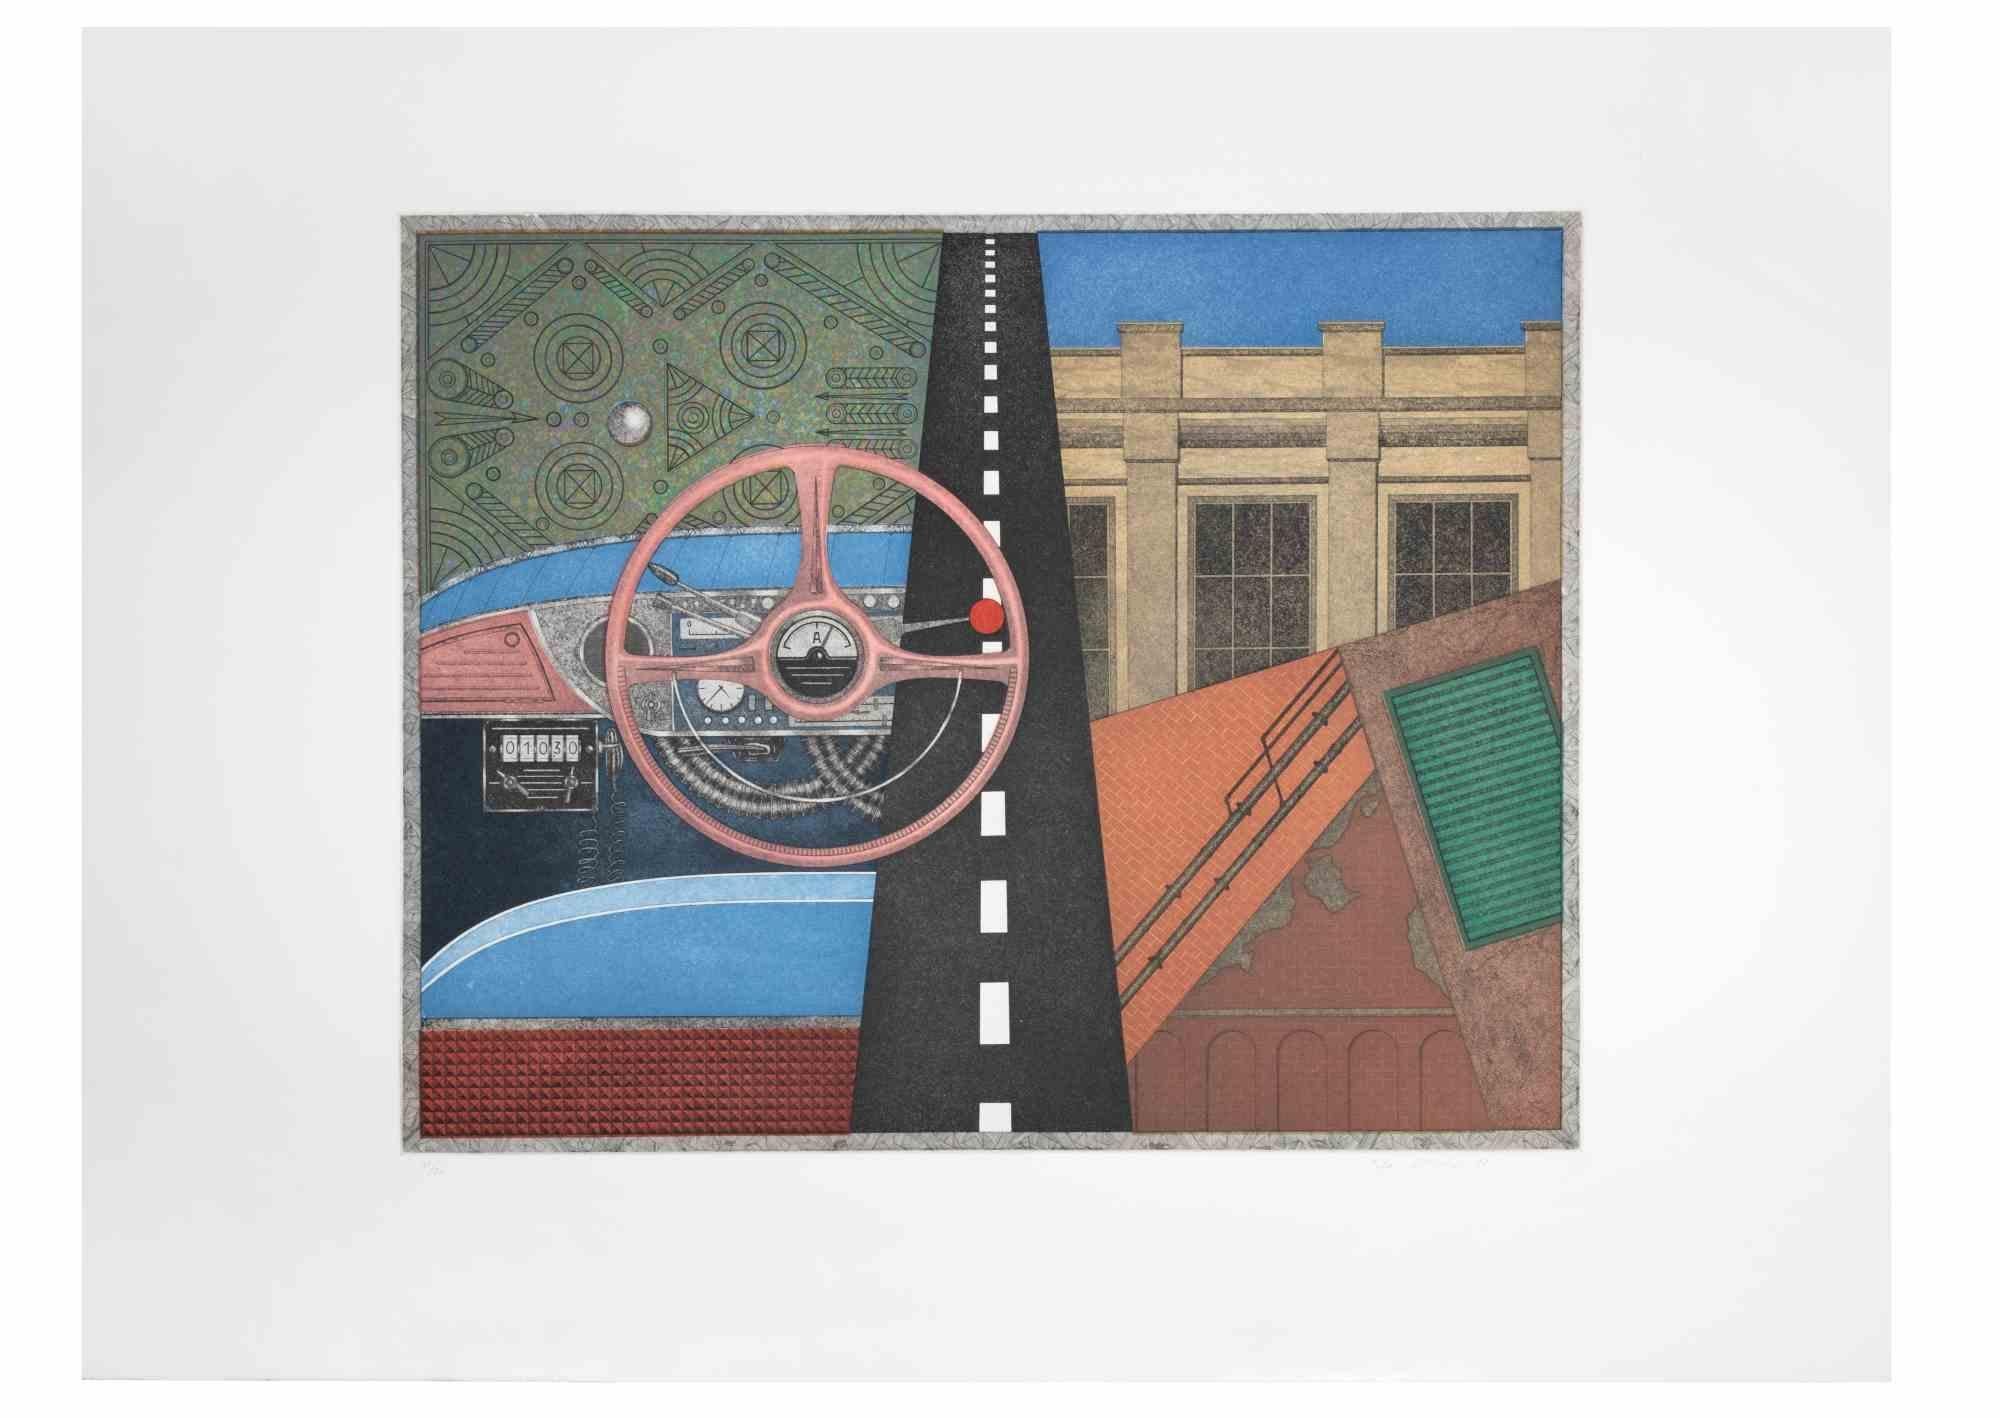 Taxi: Lenkrad ist ein zeitgenössisches Kunstwerk des Künstlers Fifo Stricker aus dem Jahr 1982.

Gemischte farbige Aquatinta und Radierung. 

Vom Künstler am rechten unteren Rand handsigniert und datiert.

Am linken unteren Rand nummeriert. Auflage